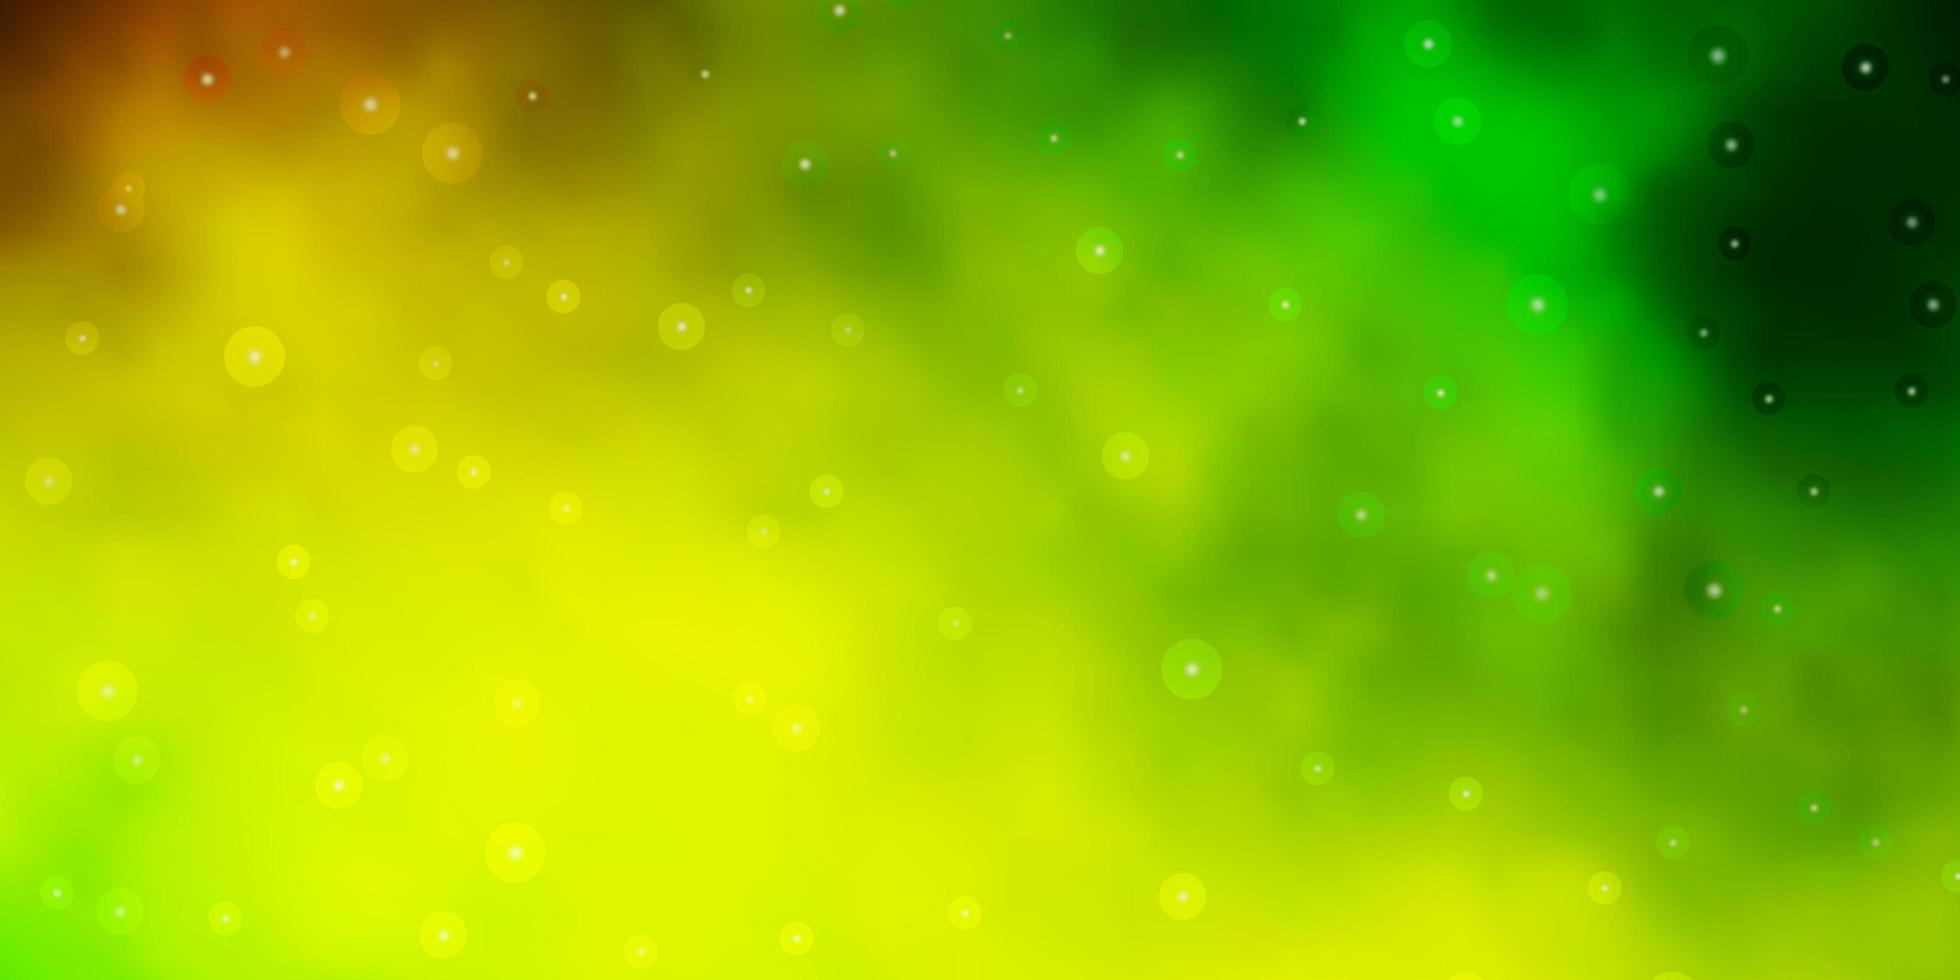 modello vettoriale verde chiaro, giallo con stelle al neon.